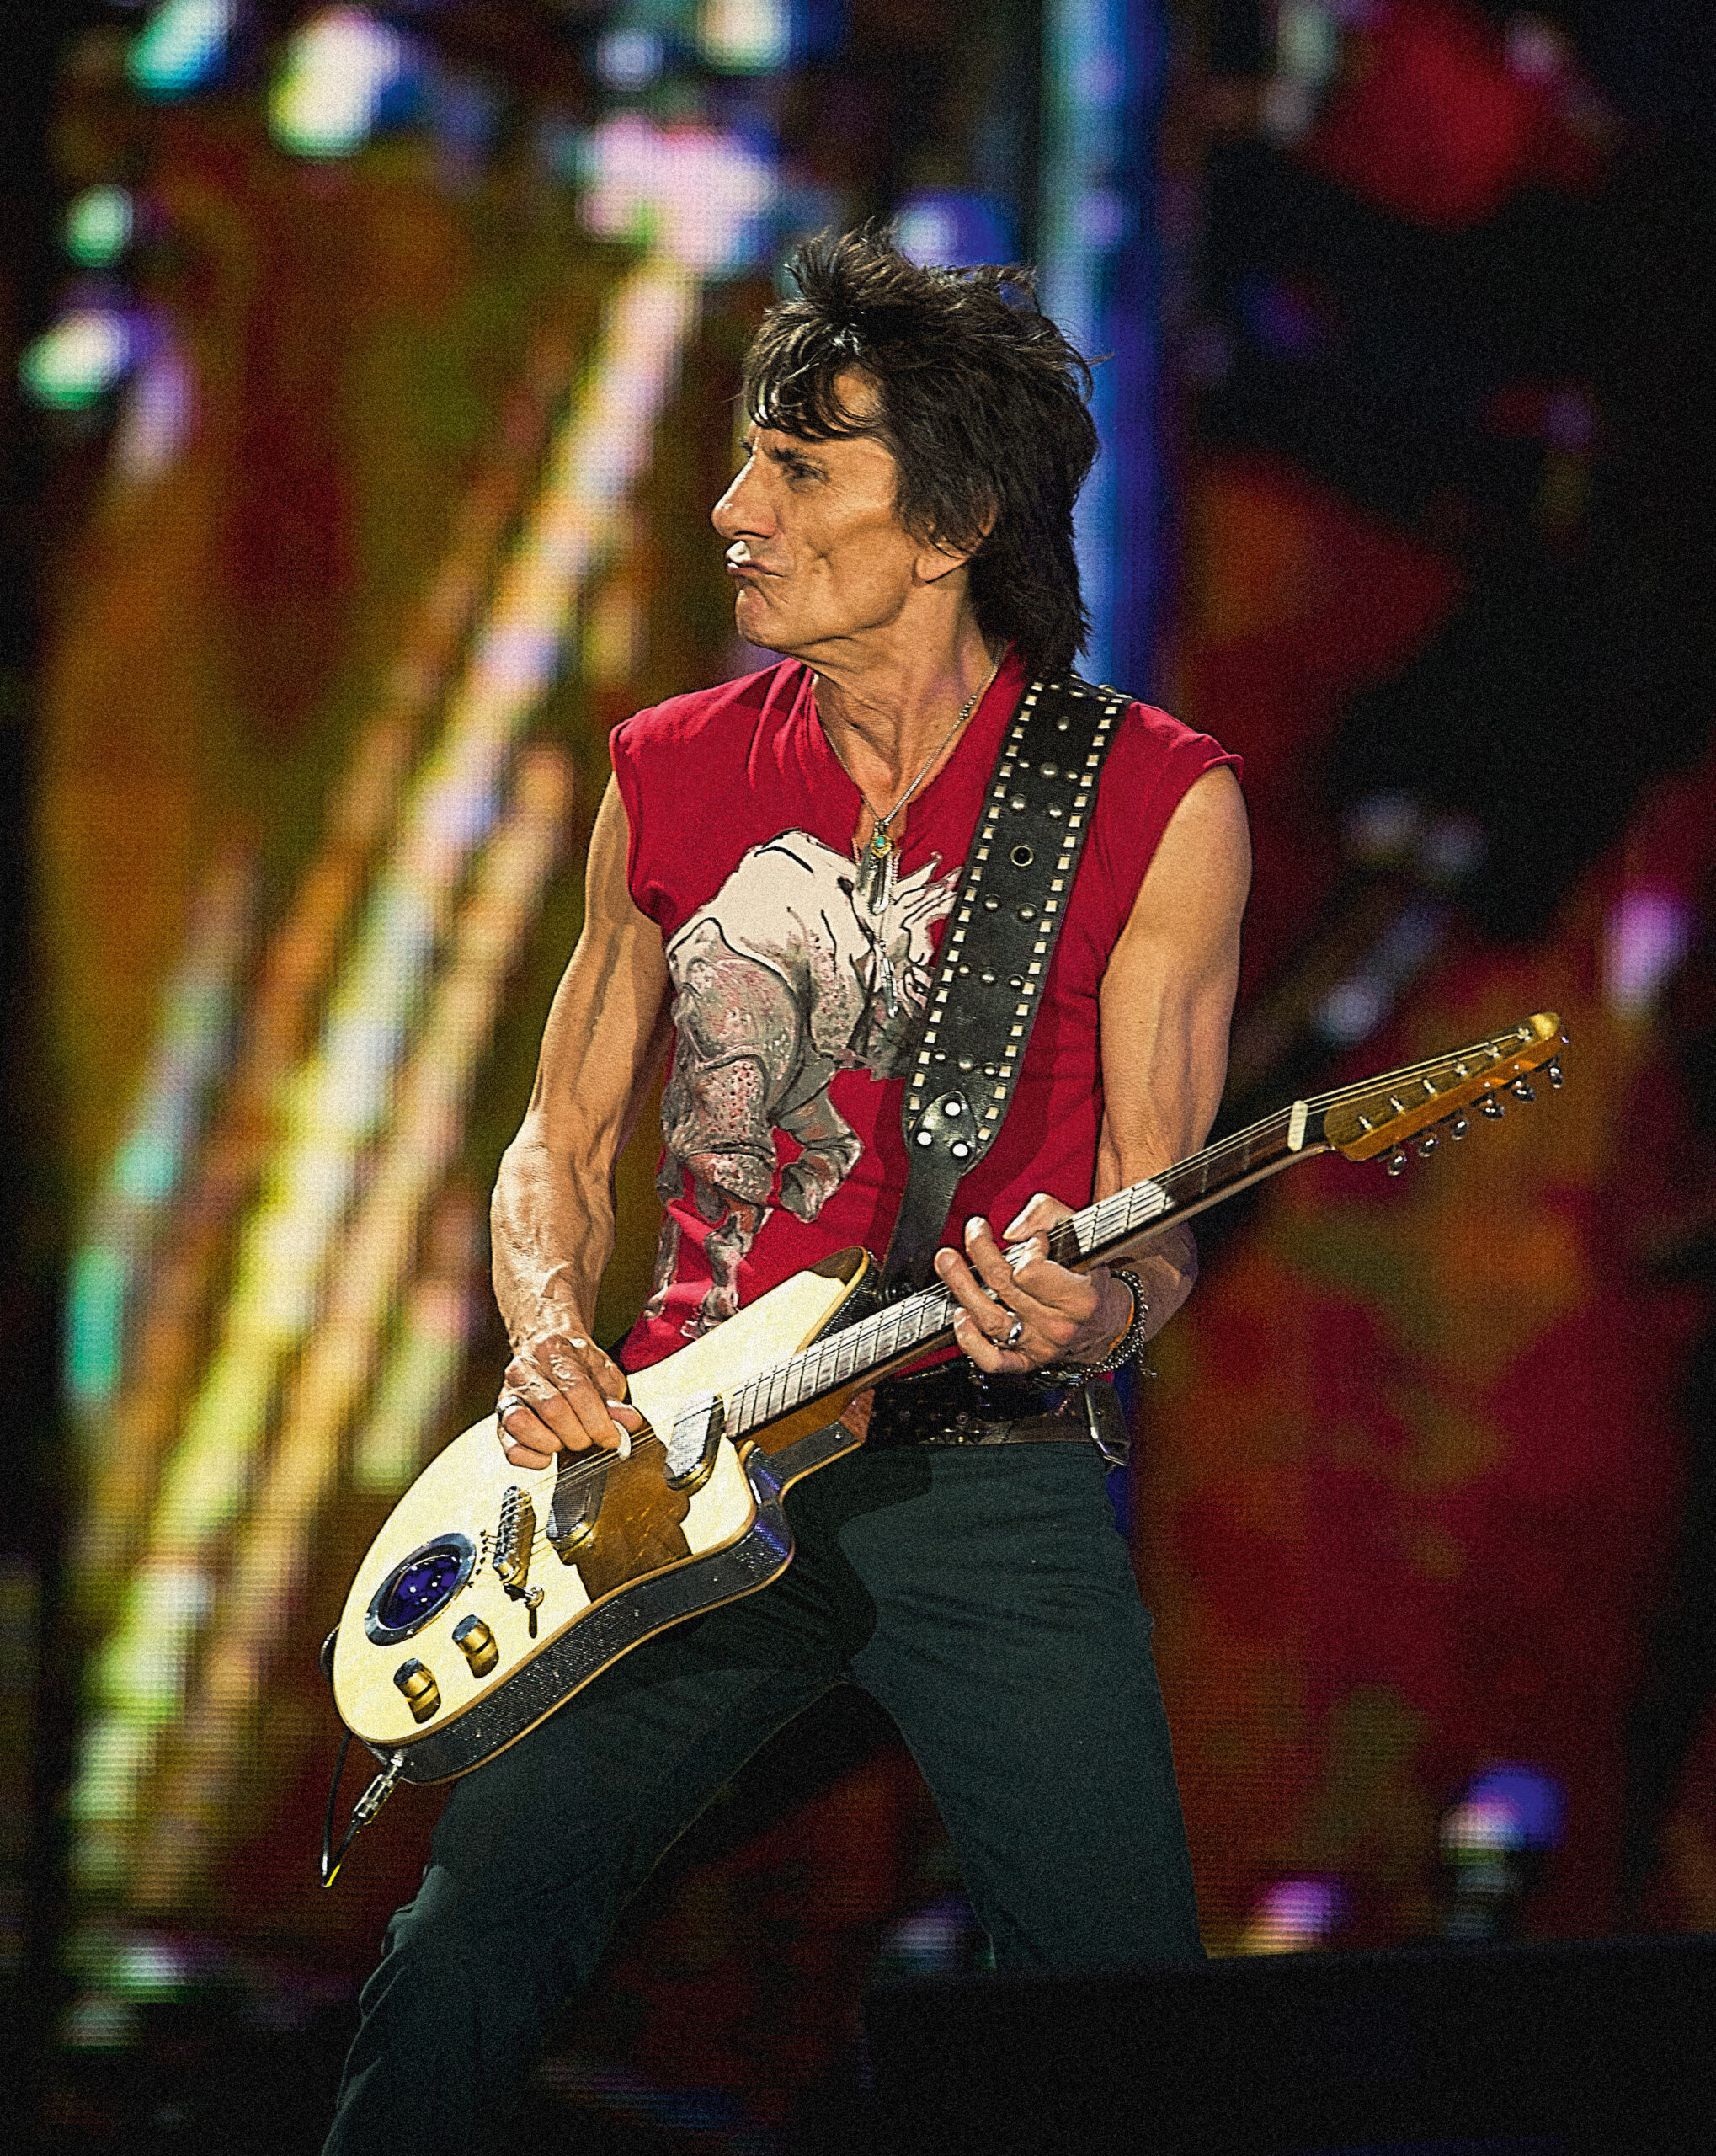 Photo du bassiste des Rolling Stones, Ronnie Wood. Photo prise par Dave Hogan.